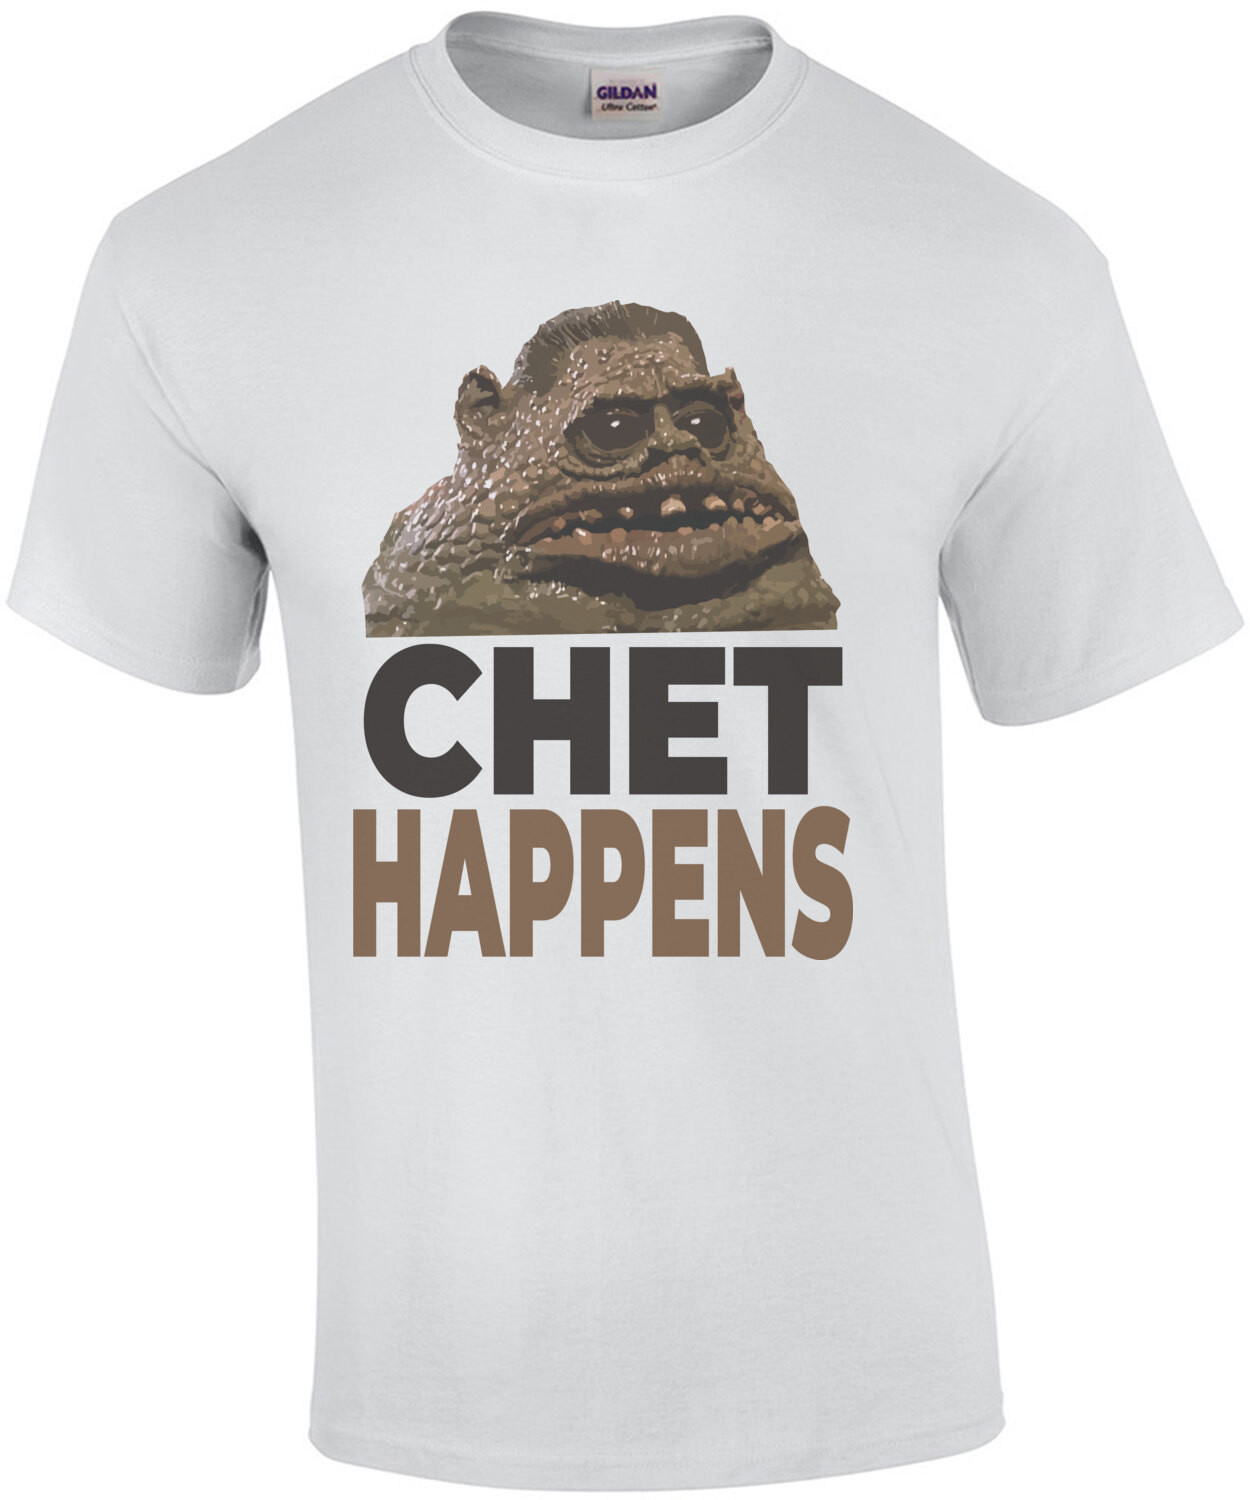 Chet Happens - Weird Science 80's T-Shirt